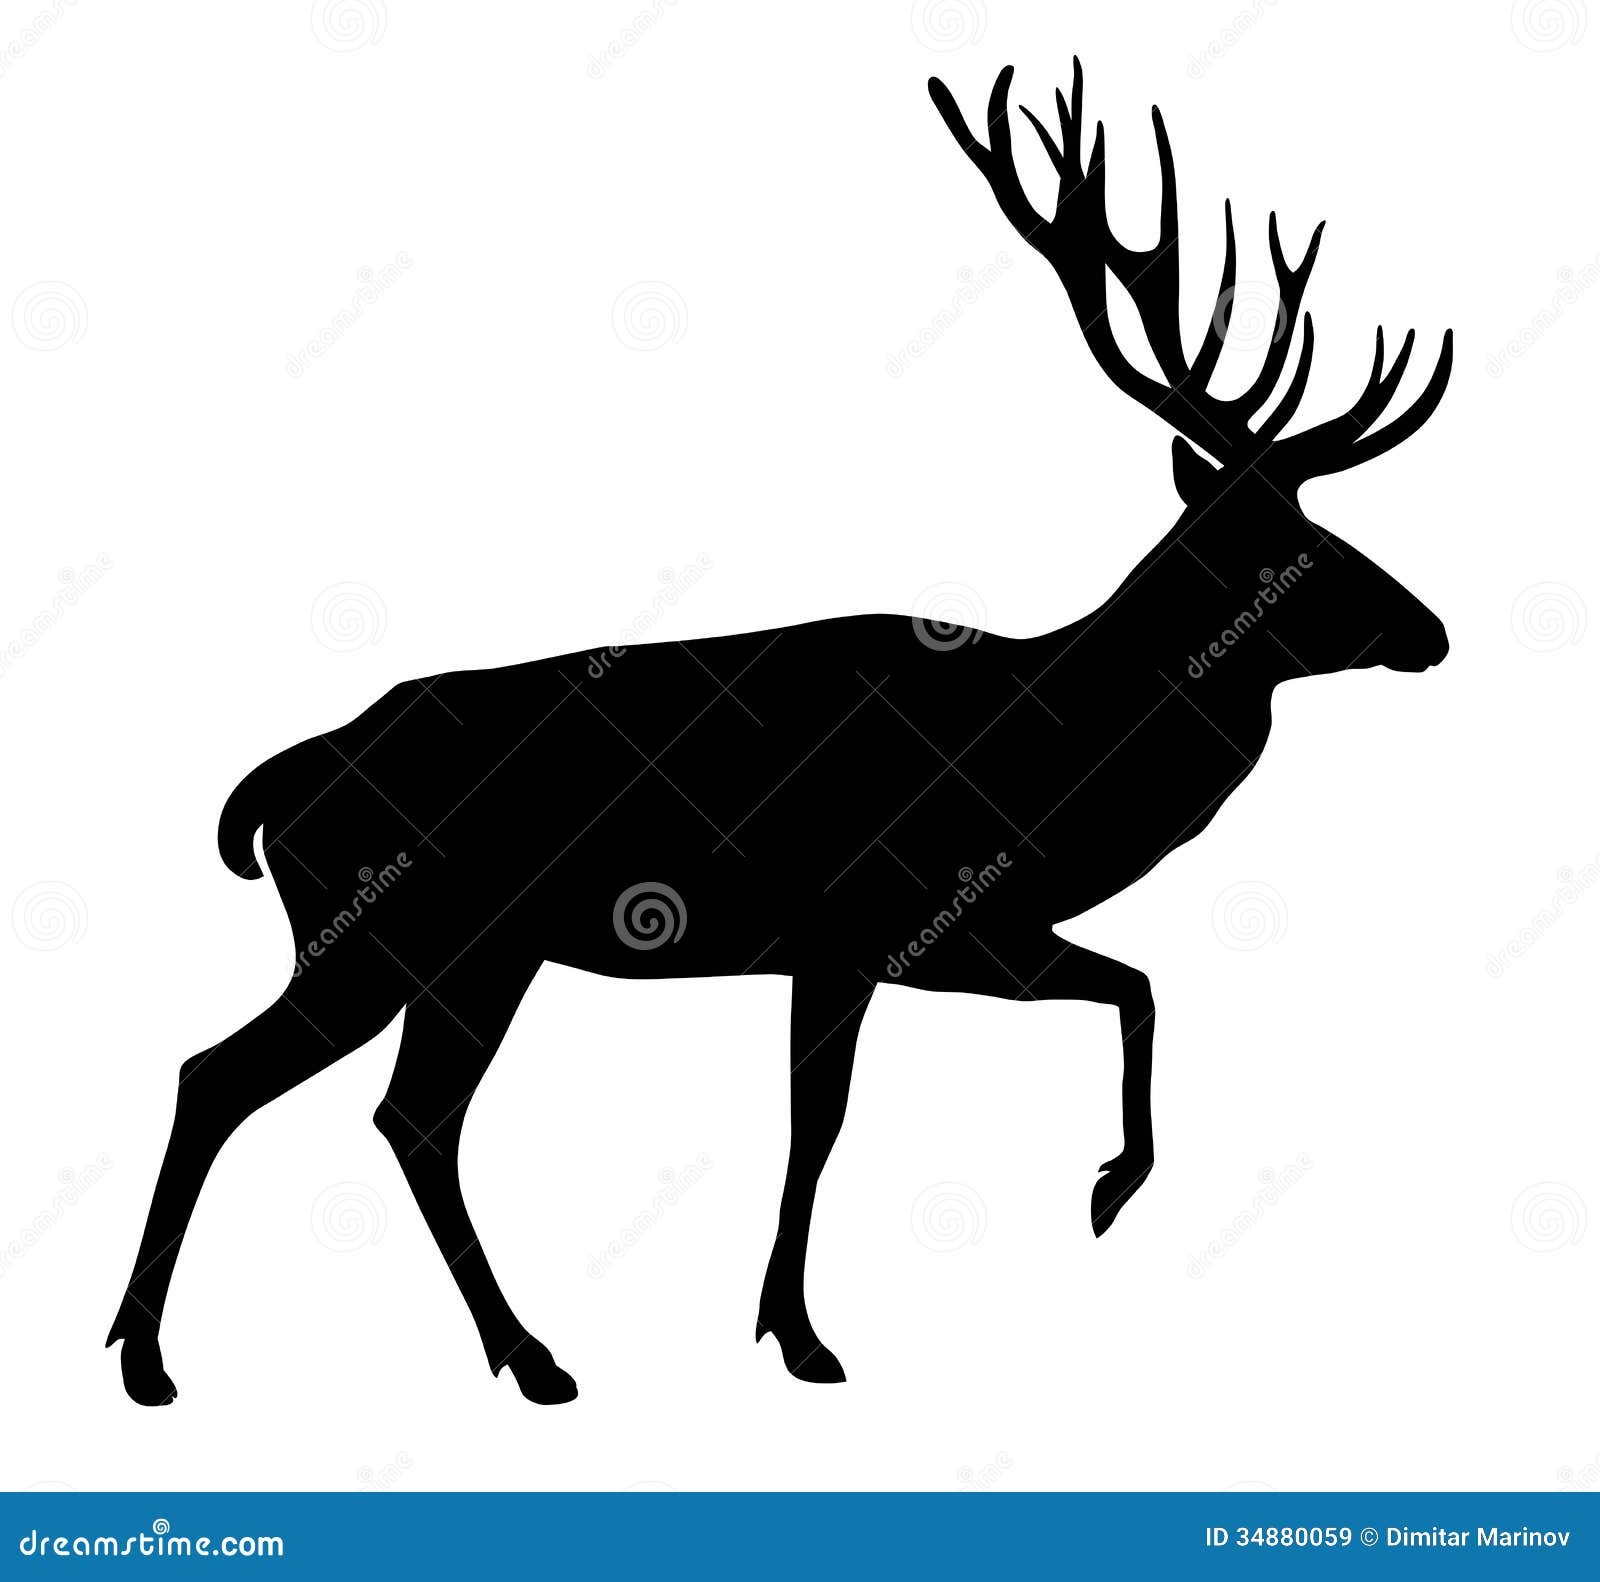 deer clipart vector - photo #46